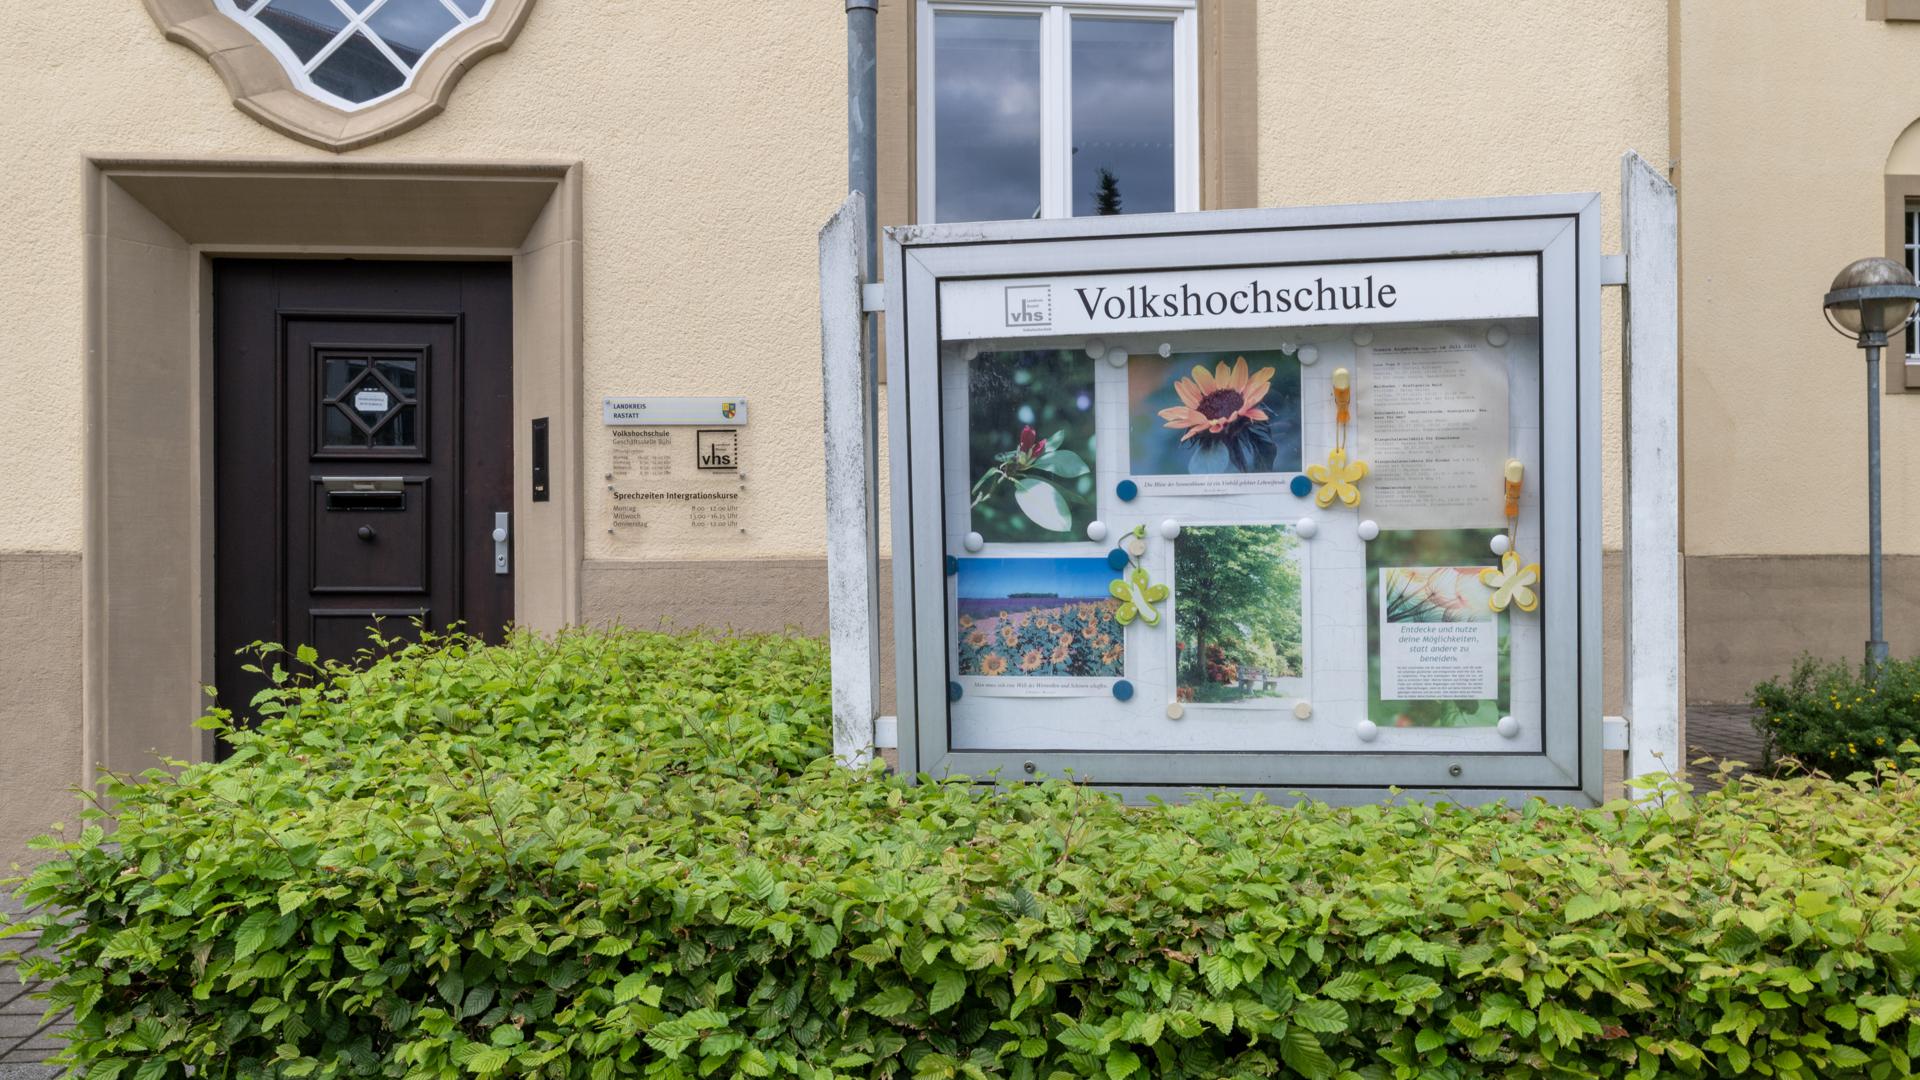 Die Volkshochschule in Bühl ist eine Außenstelle der Kreisvolkshochschule Rastatt. Sie befindet sich in der Robert-Koch-Straße.